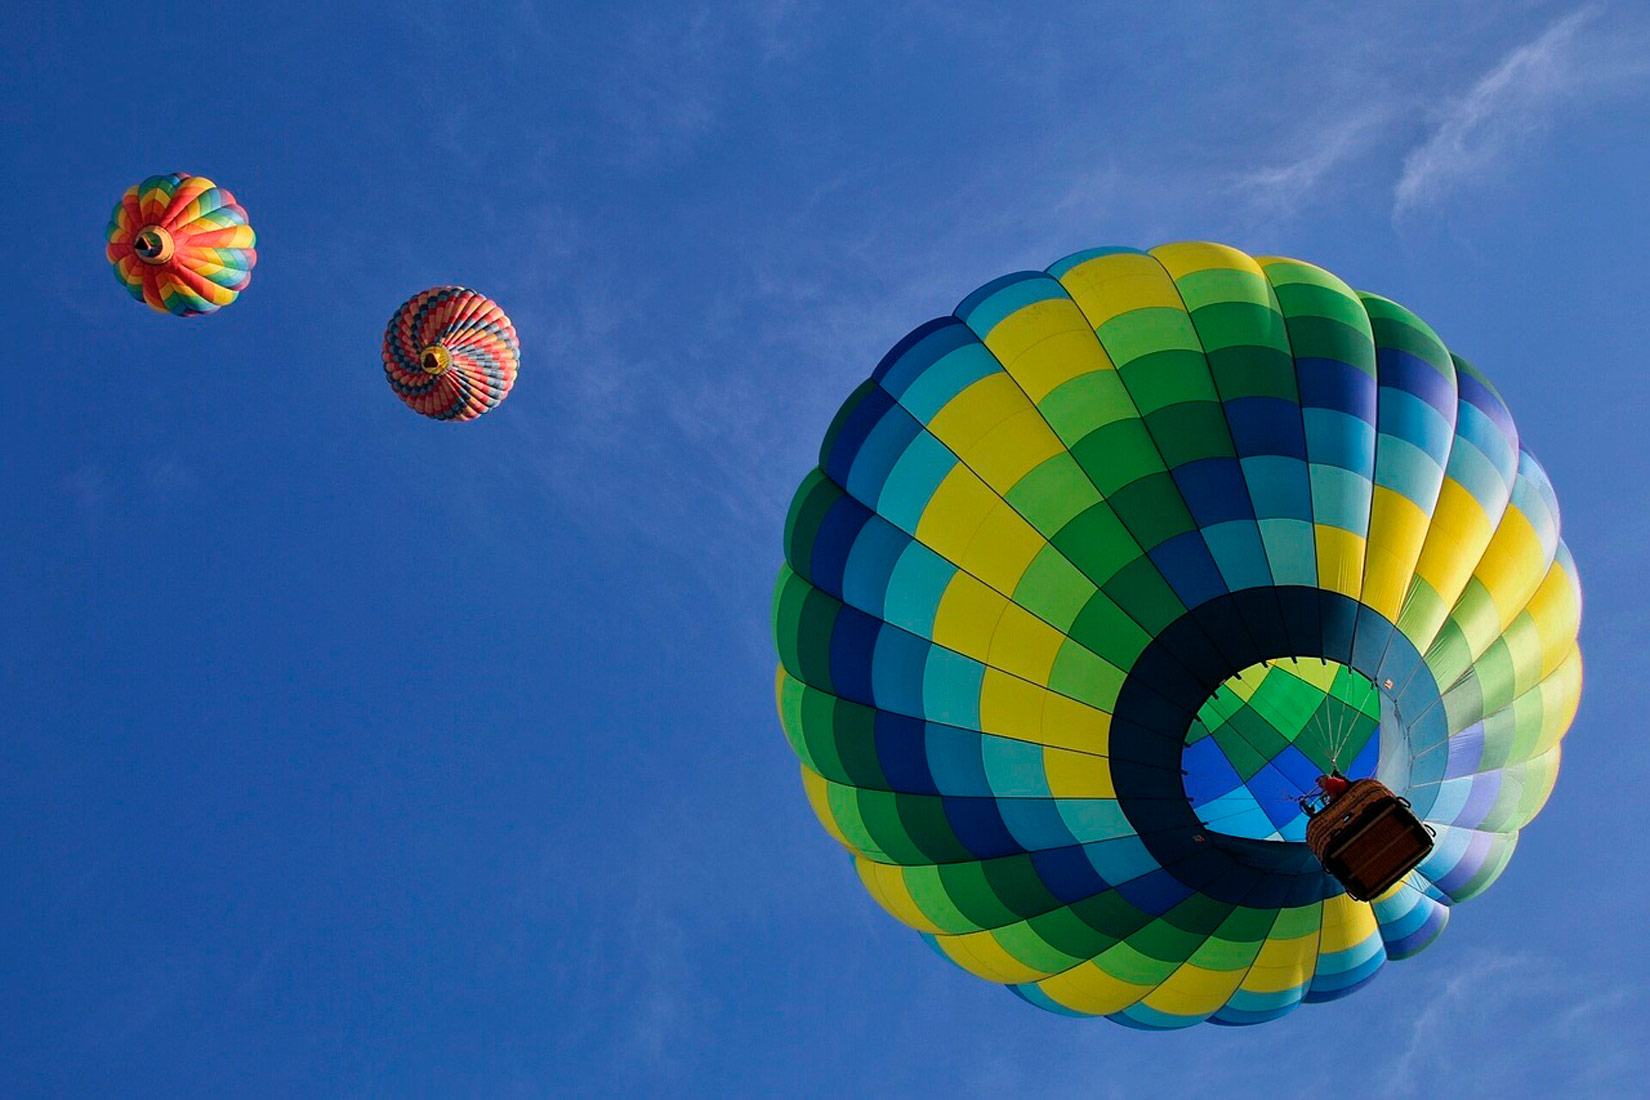 Balon na vrući zrak je prikazan u plavoj, zelenoj i žutoj boji. Ispod balona je pričvršćena košara užadima. Balon se digao u visinu prema plavom nebu.